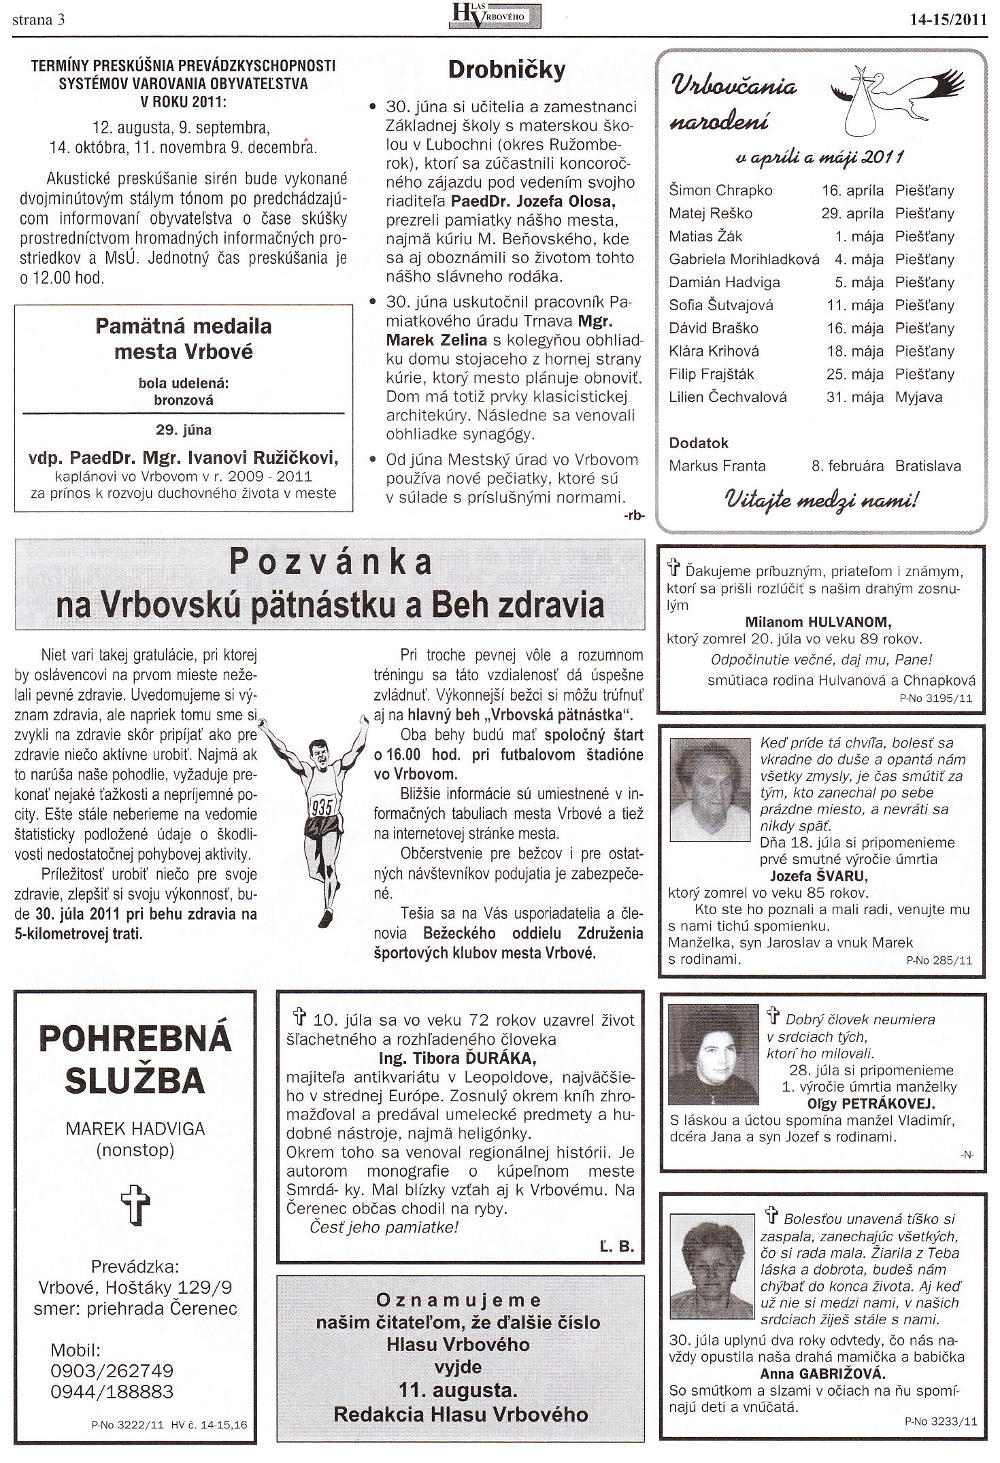 Hlas Vrbového 14-15/2011, strana 3